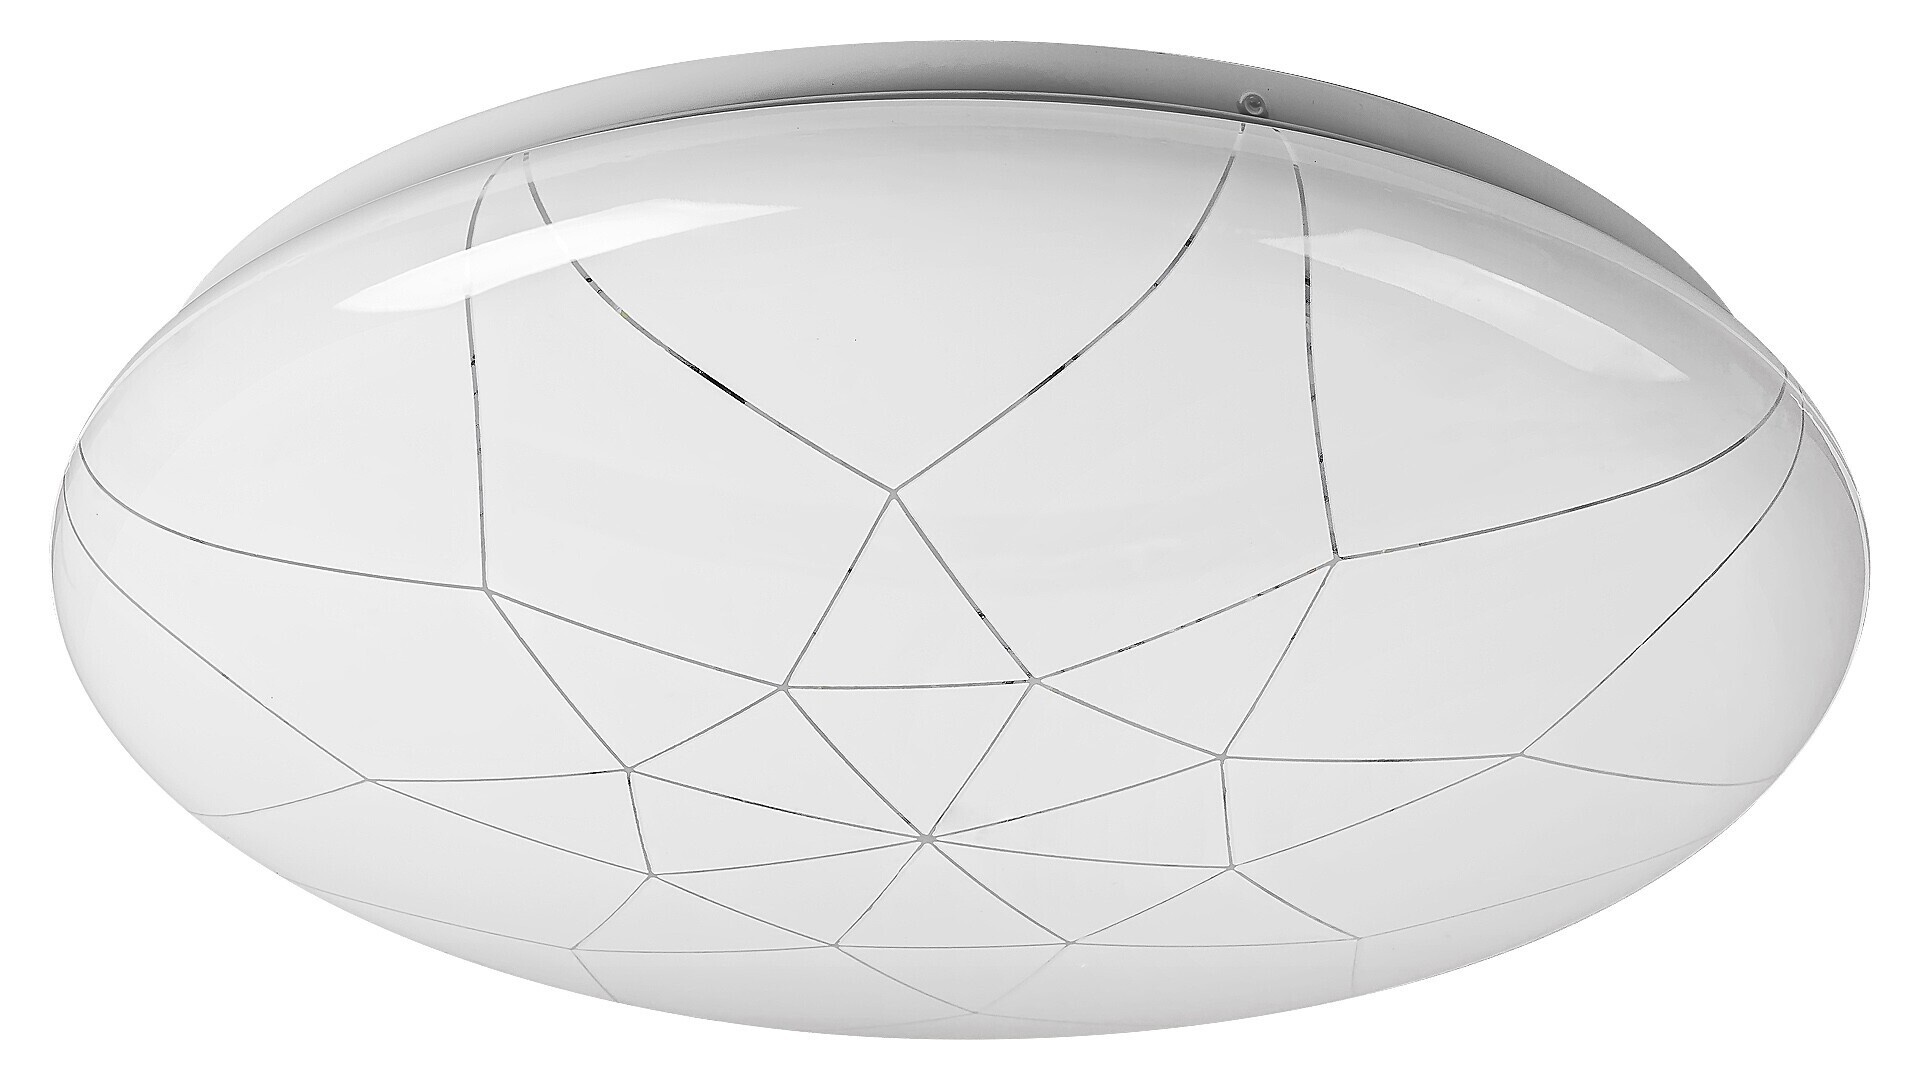 LED-Leuchtmittel Damien 5540, 24W, 1920lm, Metall, weiß, Modern, ø390mm